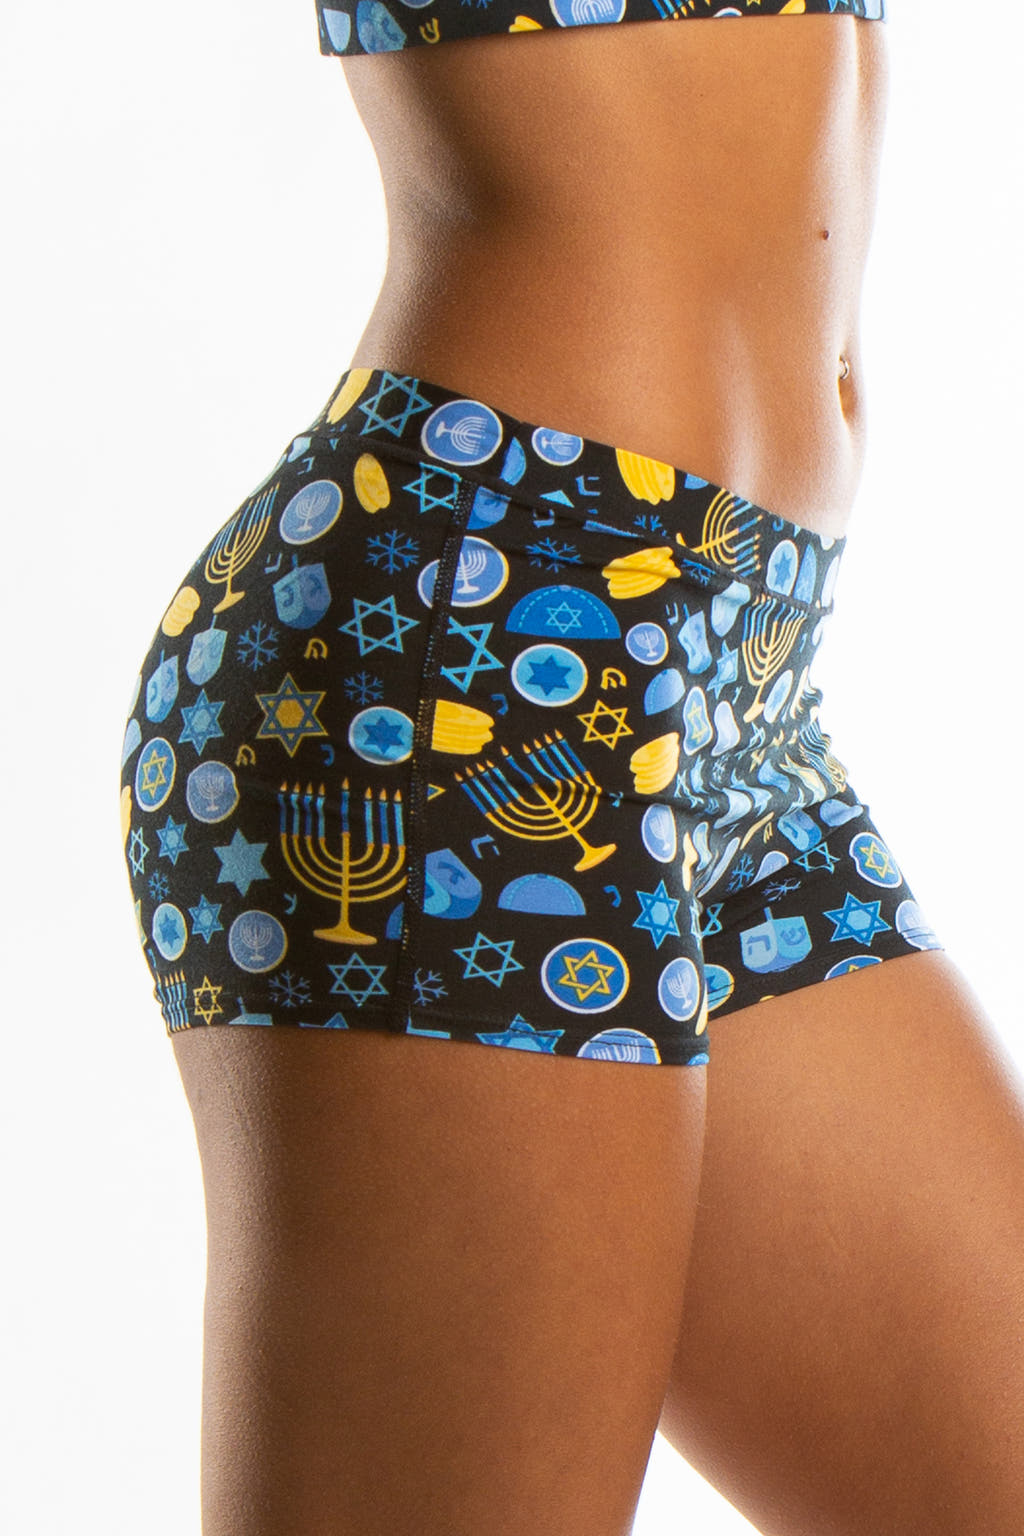 Gelty Pleasure Hanukkah Boyshort Underwear